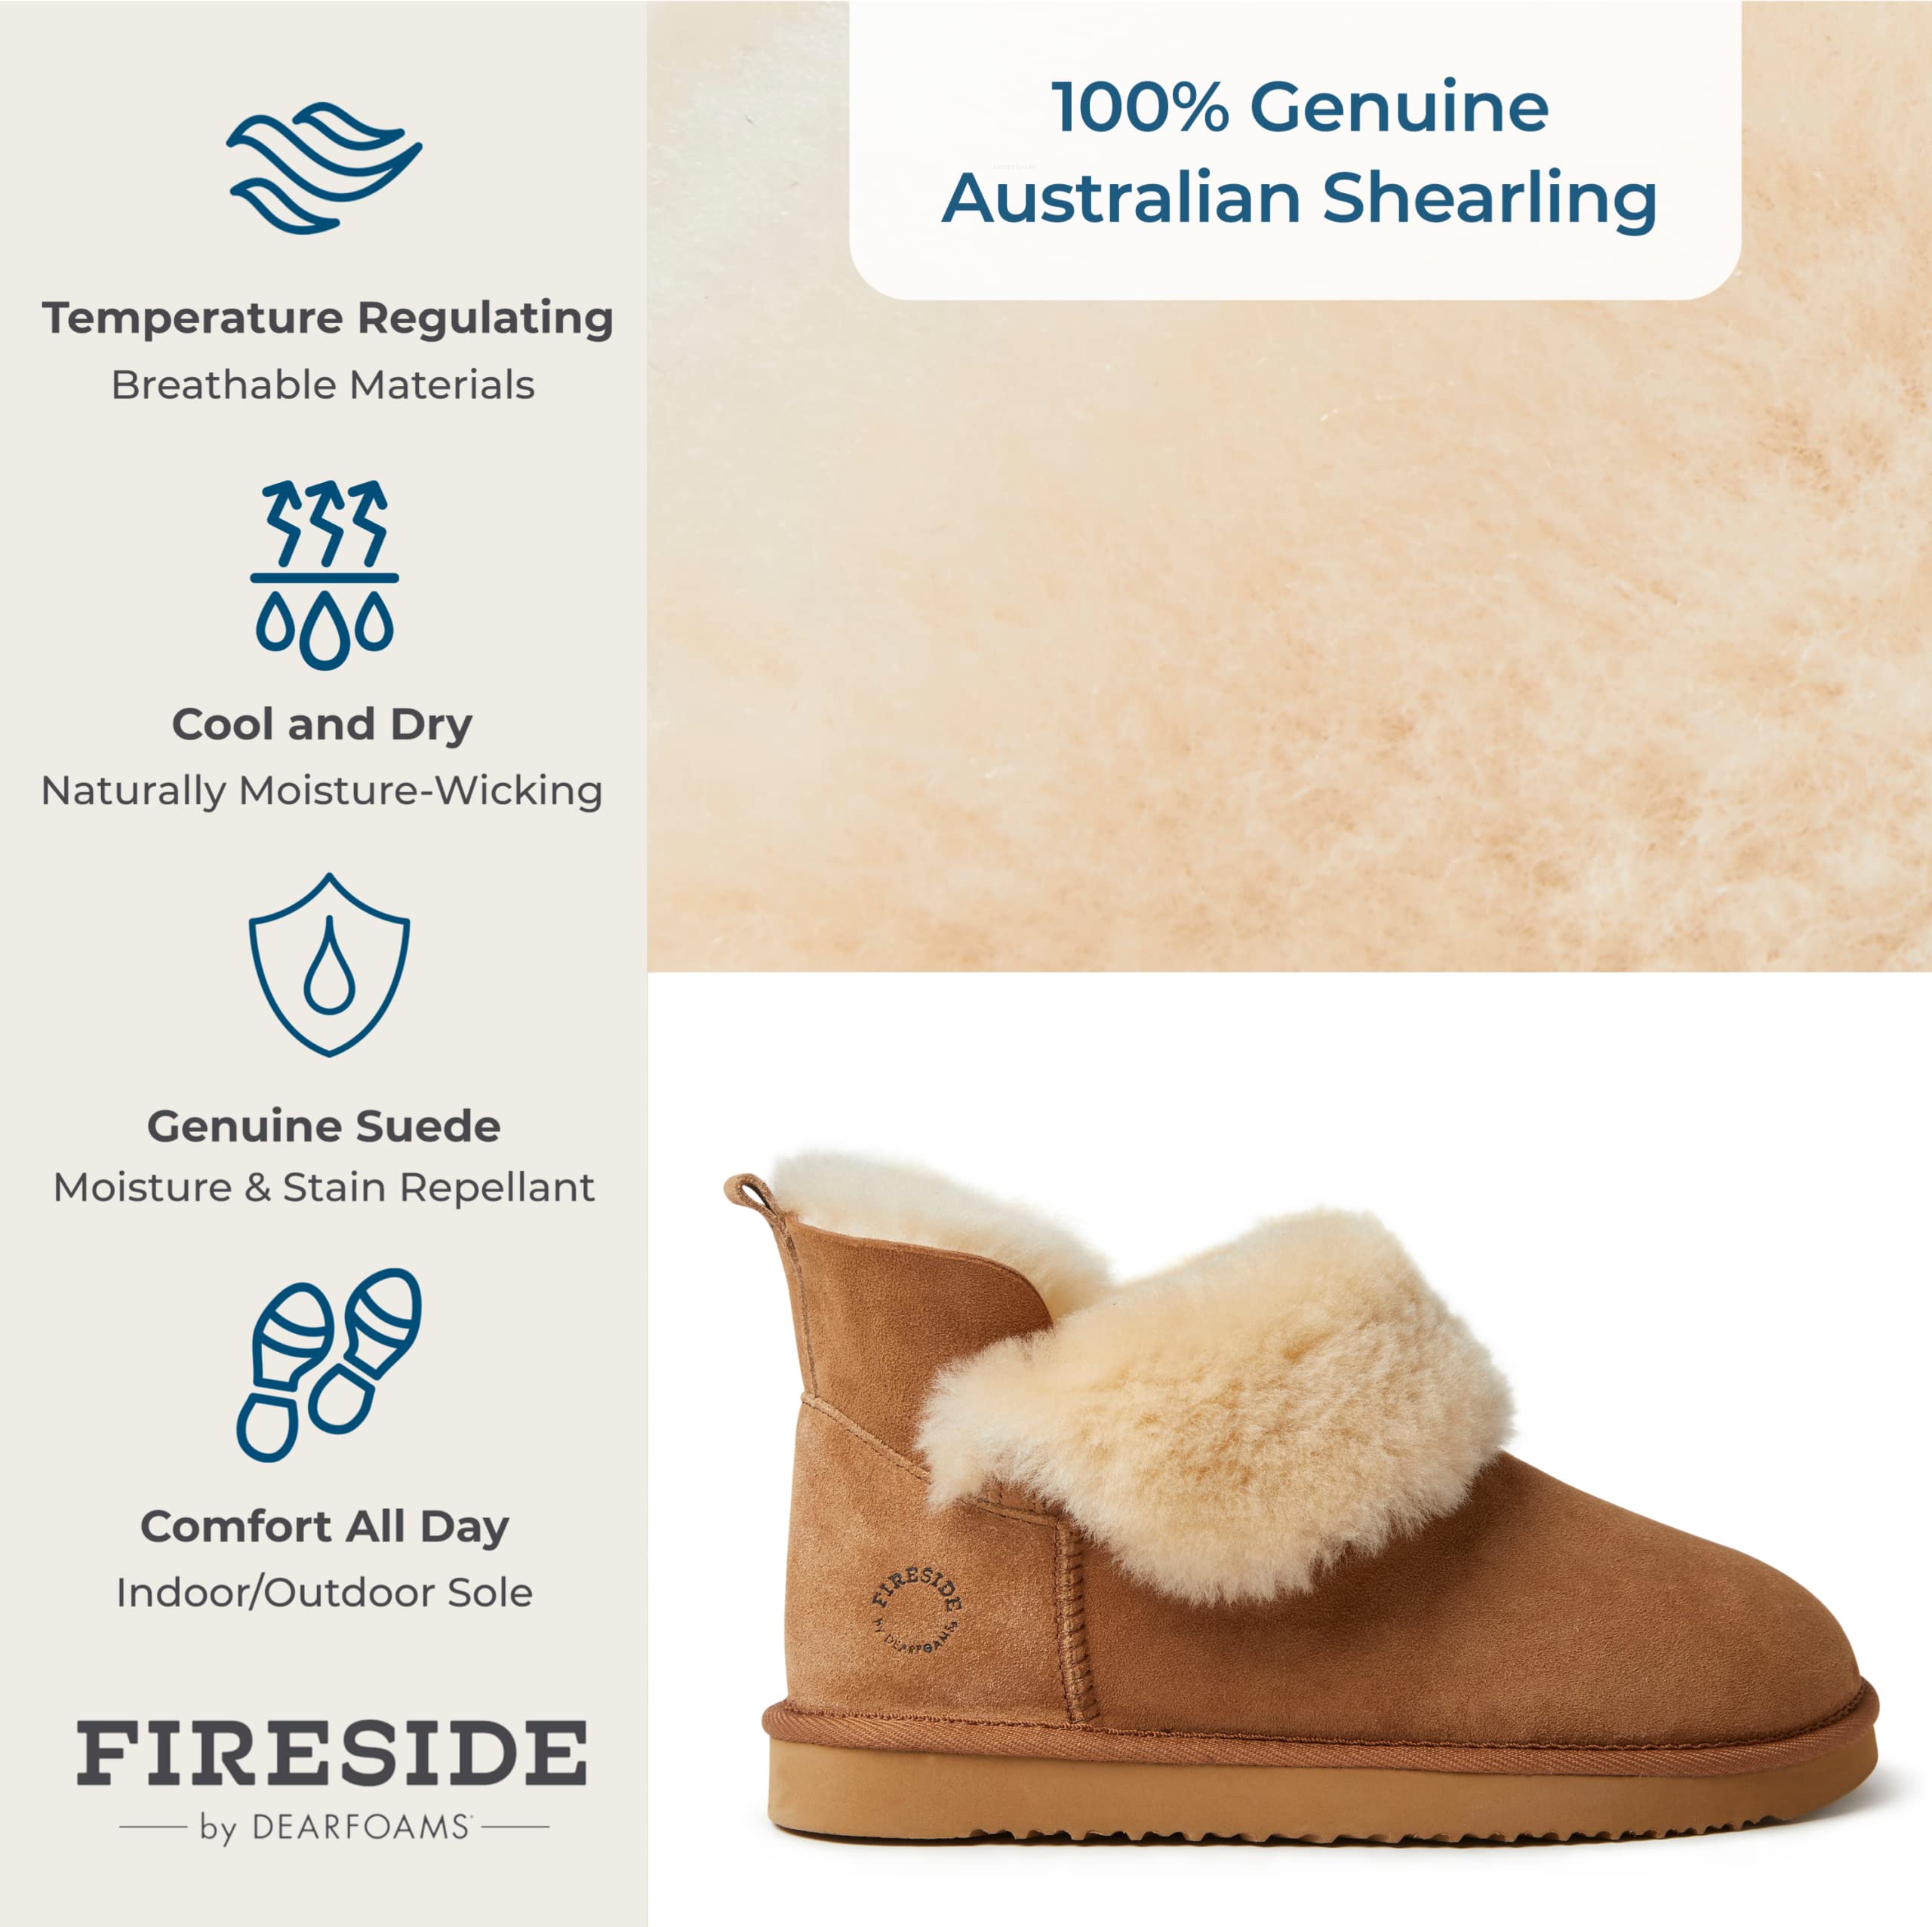 Dearfoams Women's Fireside Shearling Water Resistant Indoor/Outdoor Foldover Boot Slipper